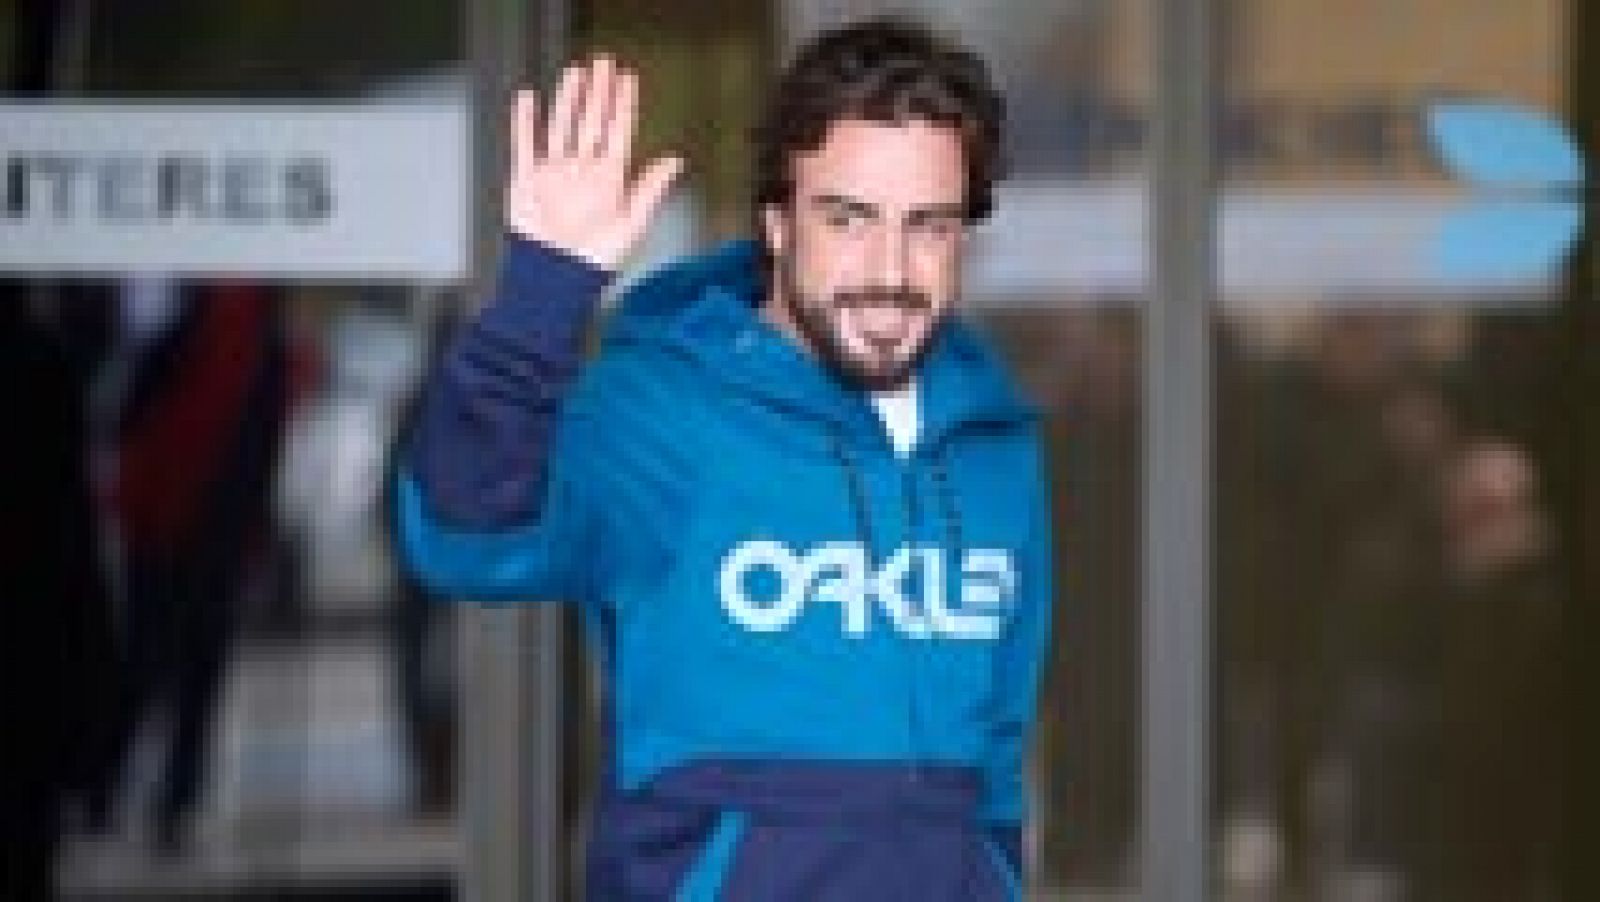 El piloto español Fernando Alonso, no correrá la primera carrera del Mundial de Fórmula 1, en Melbourne, "siguiendo las recomendaciones médicas" tras el accidente sufrido en Motmeló el pasado 22 de marzo.